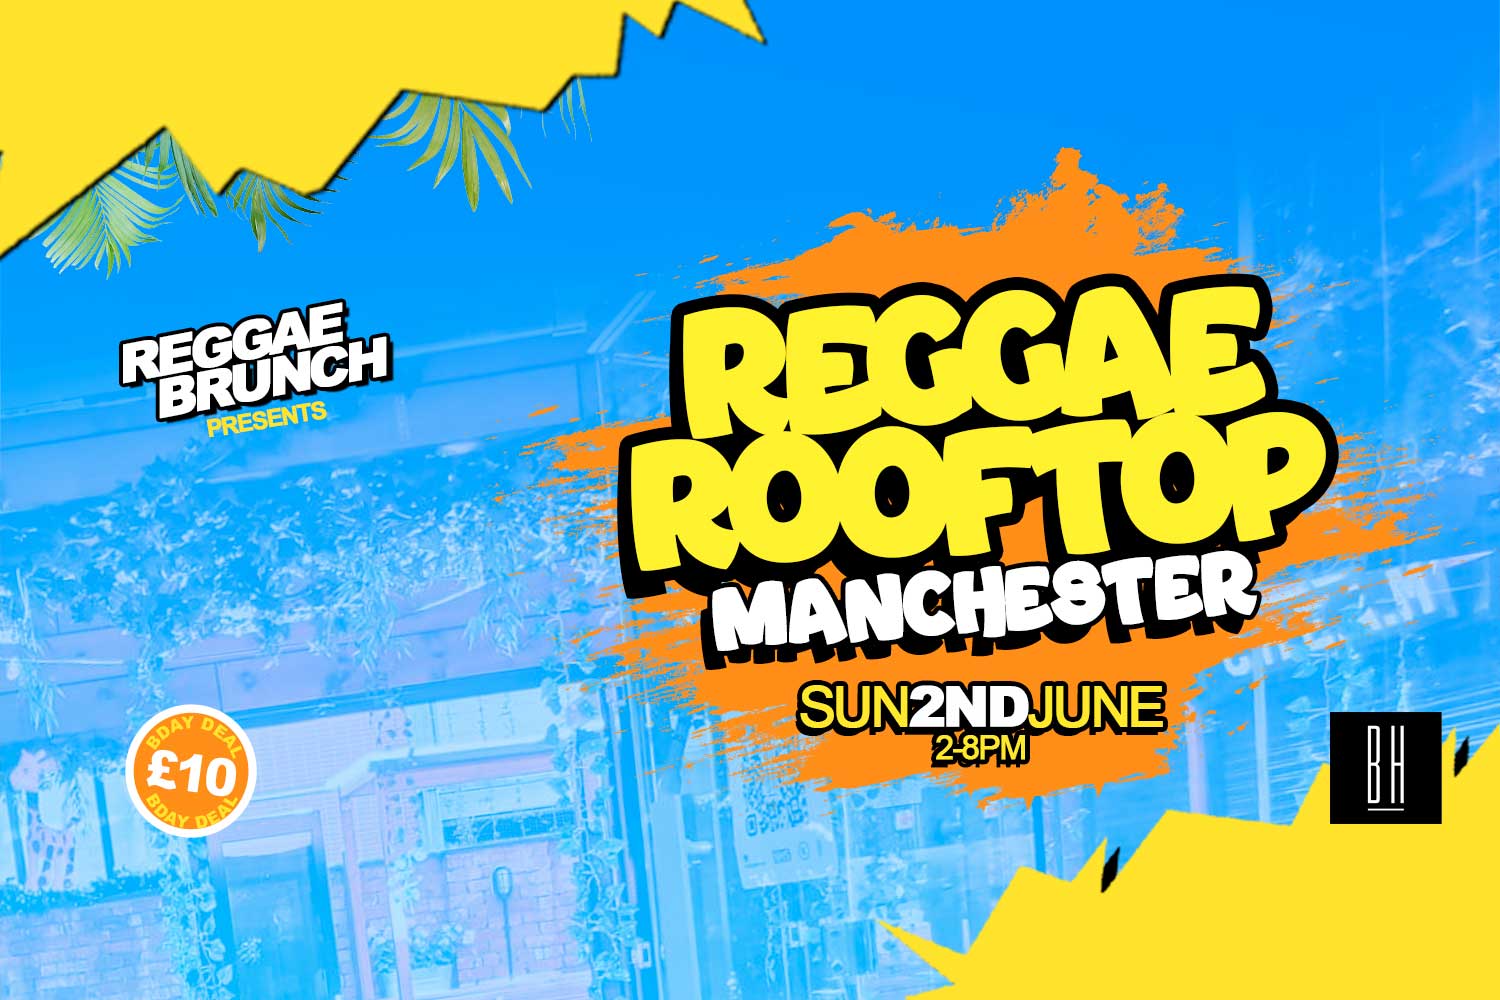 Sun, 2nd June | Reggae Rooftop Manchester